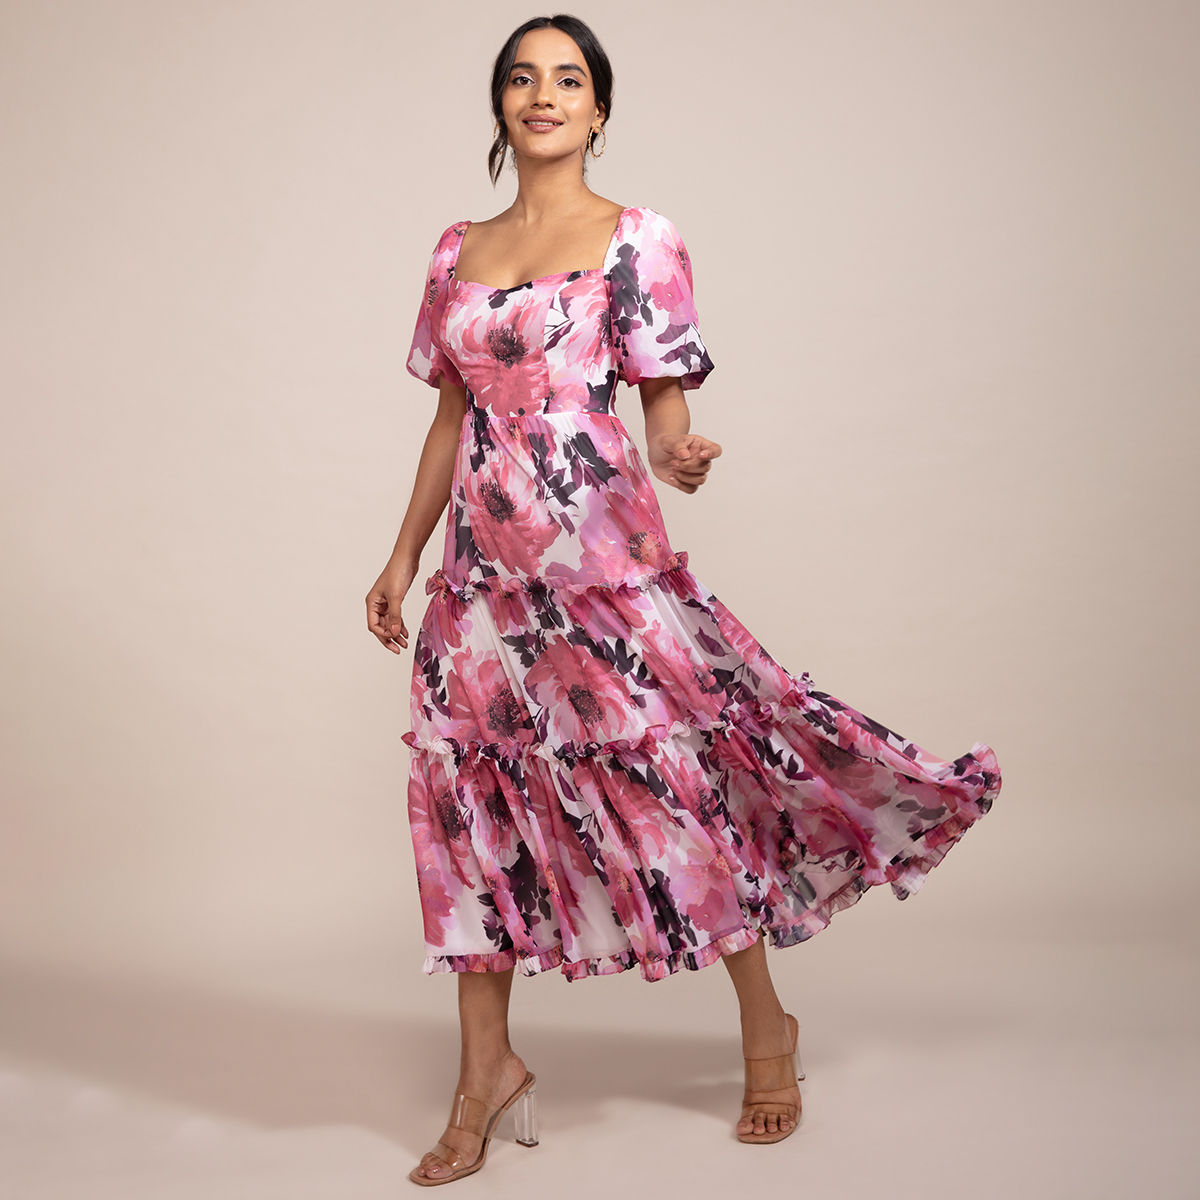 Buy Trendy Summer Dresses for Women Online at Femella  FEMMELLA